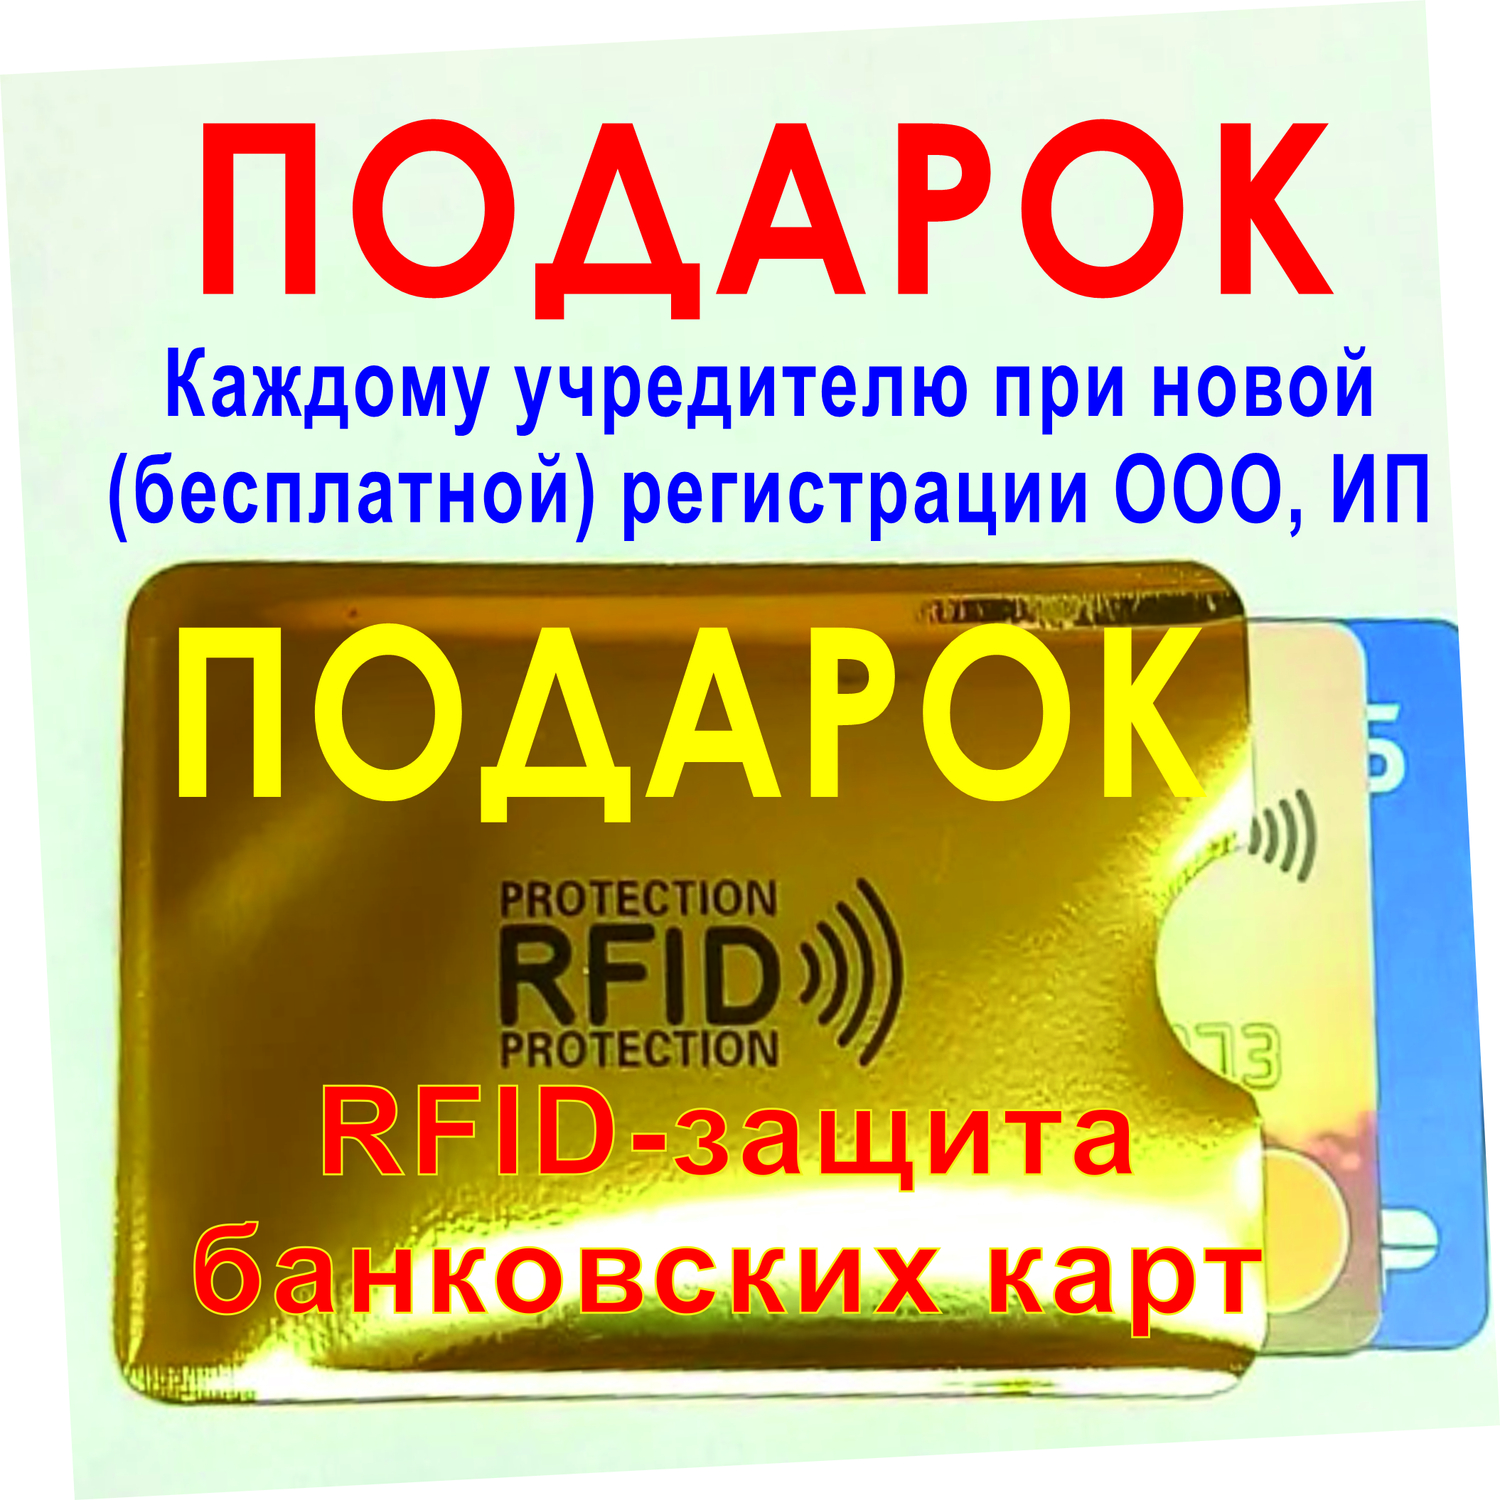 Регистрация ООО онлайн в Ярославле налоговая госуслуги